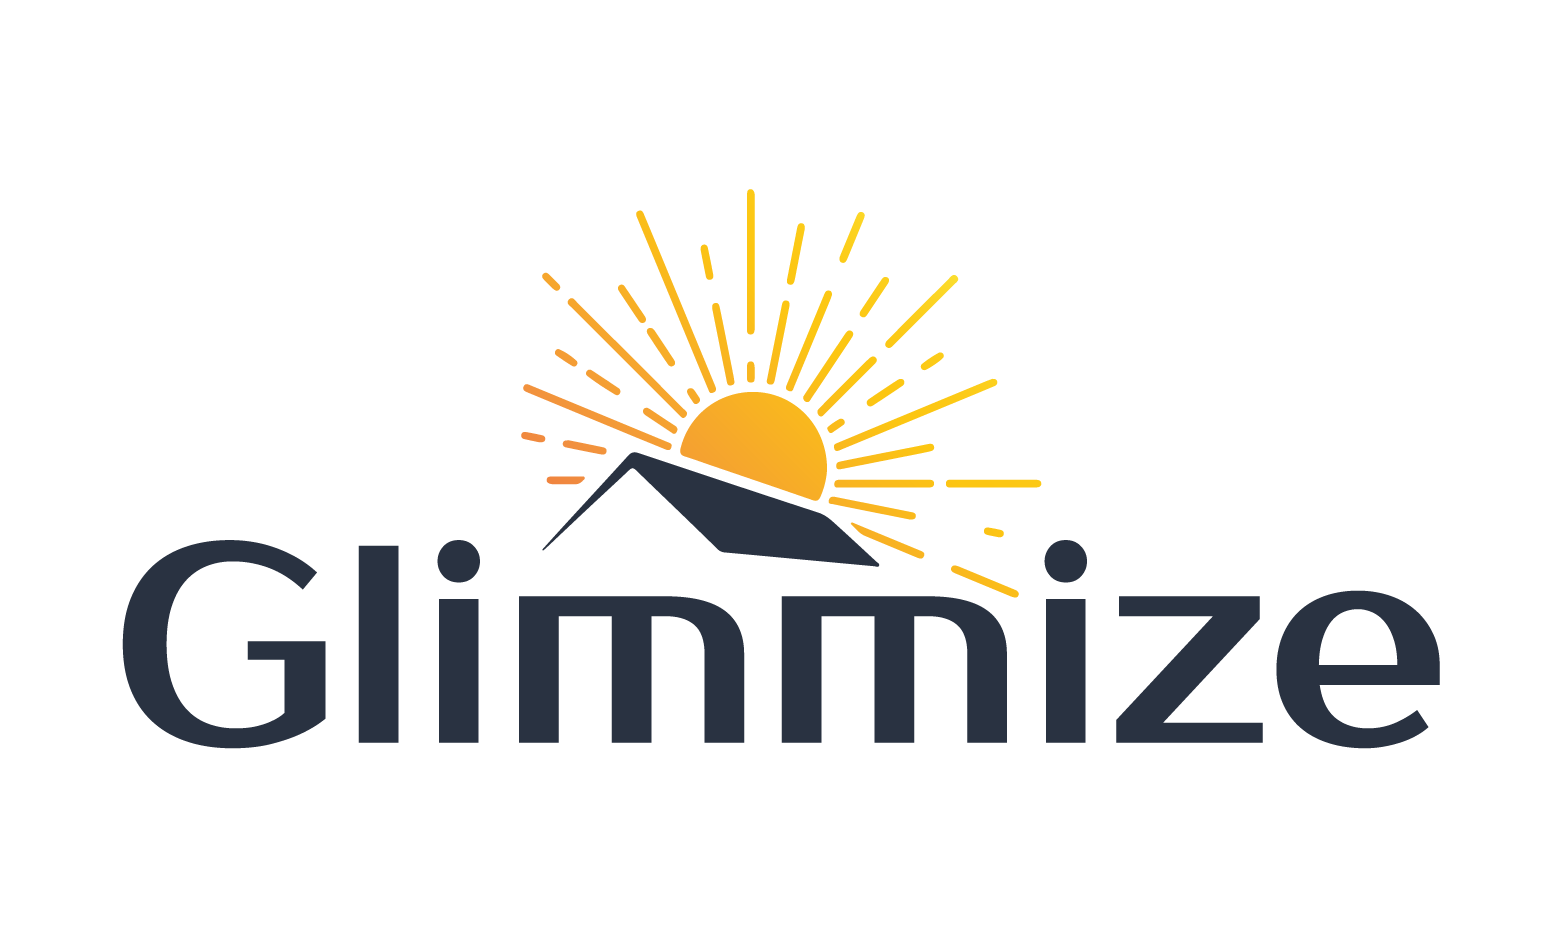 Glimmize.com - Creative brandable domain for sale